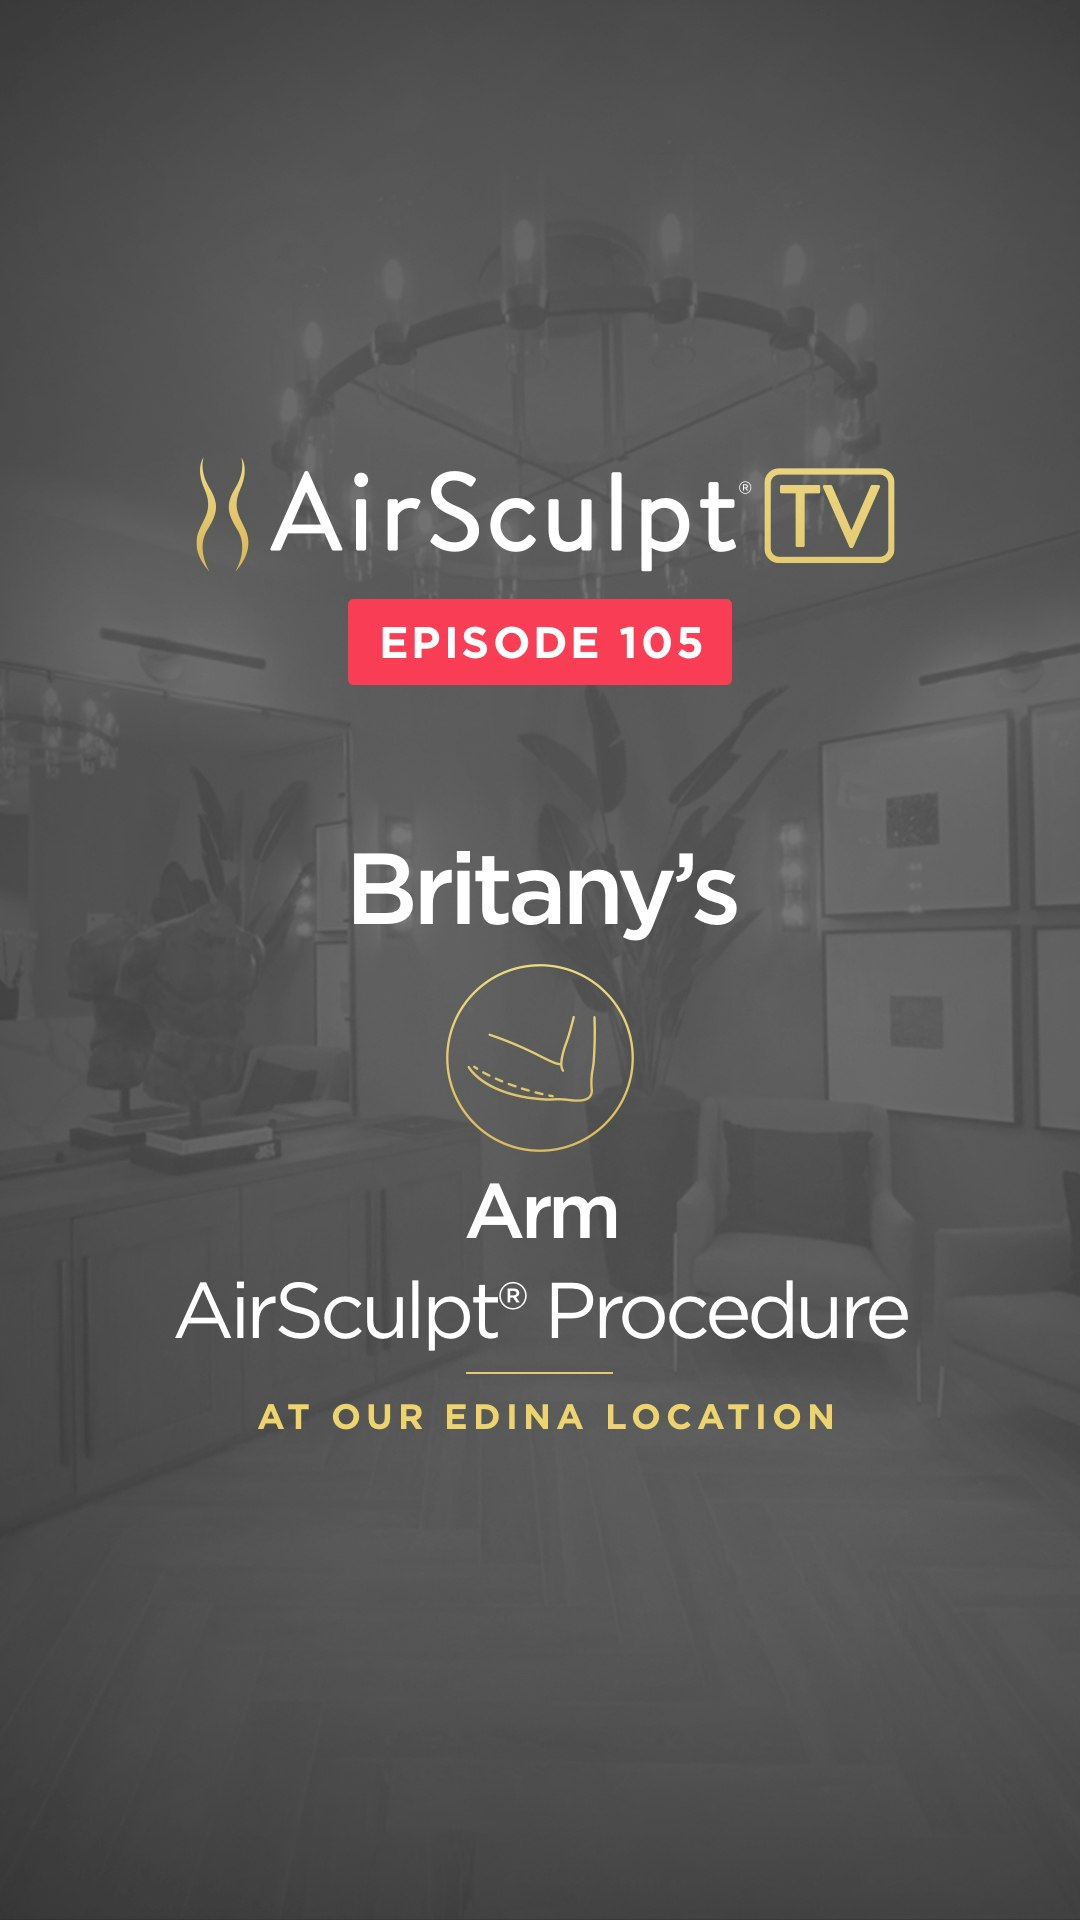 Britany's airsculpt tv thumbnail